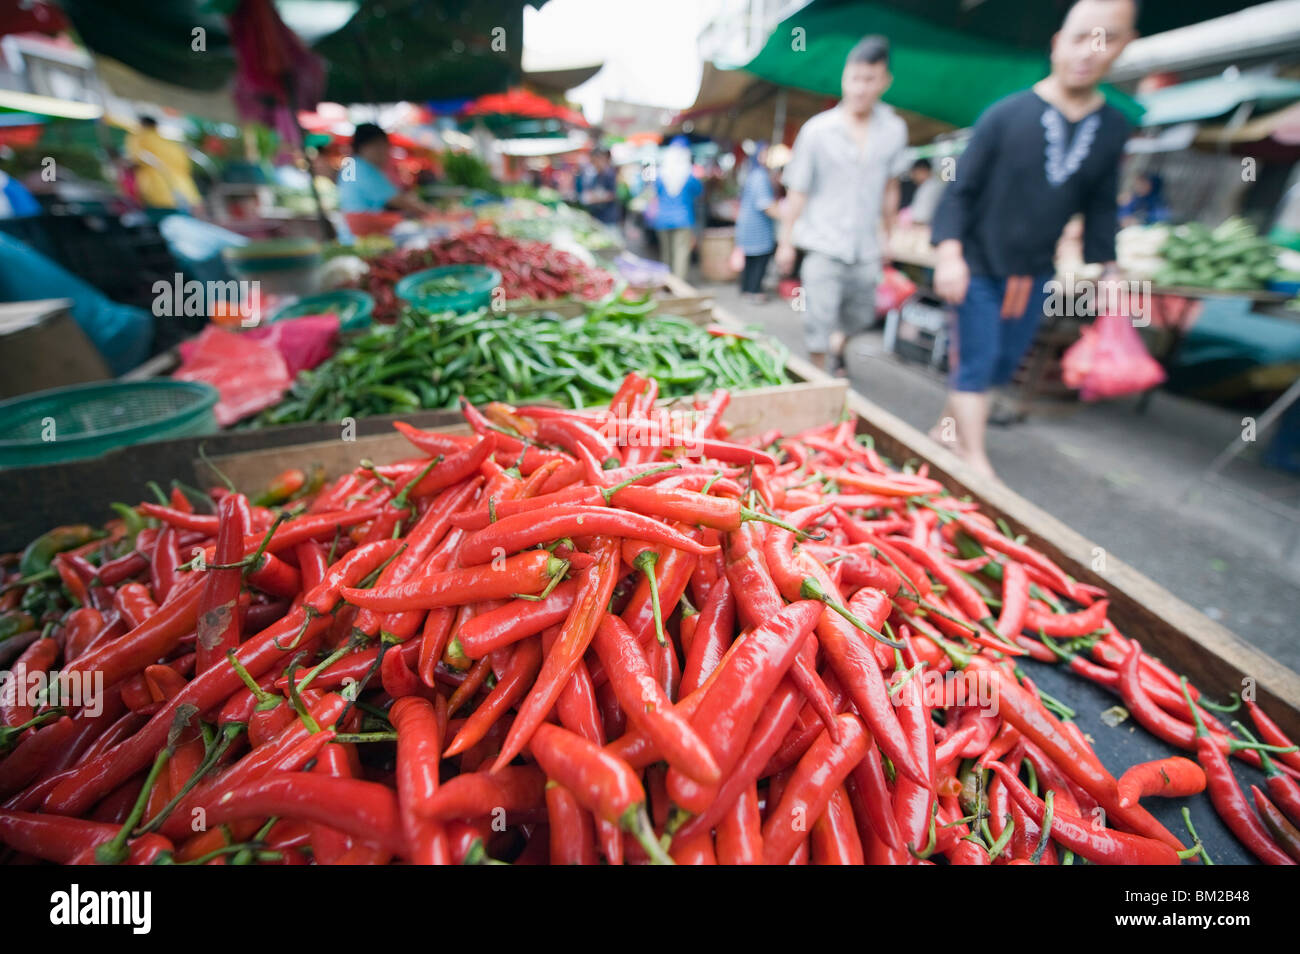 Chili peppers, Pudu market, Kuala Lumpur, Malaysia, Southeast Asia Stock Photo